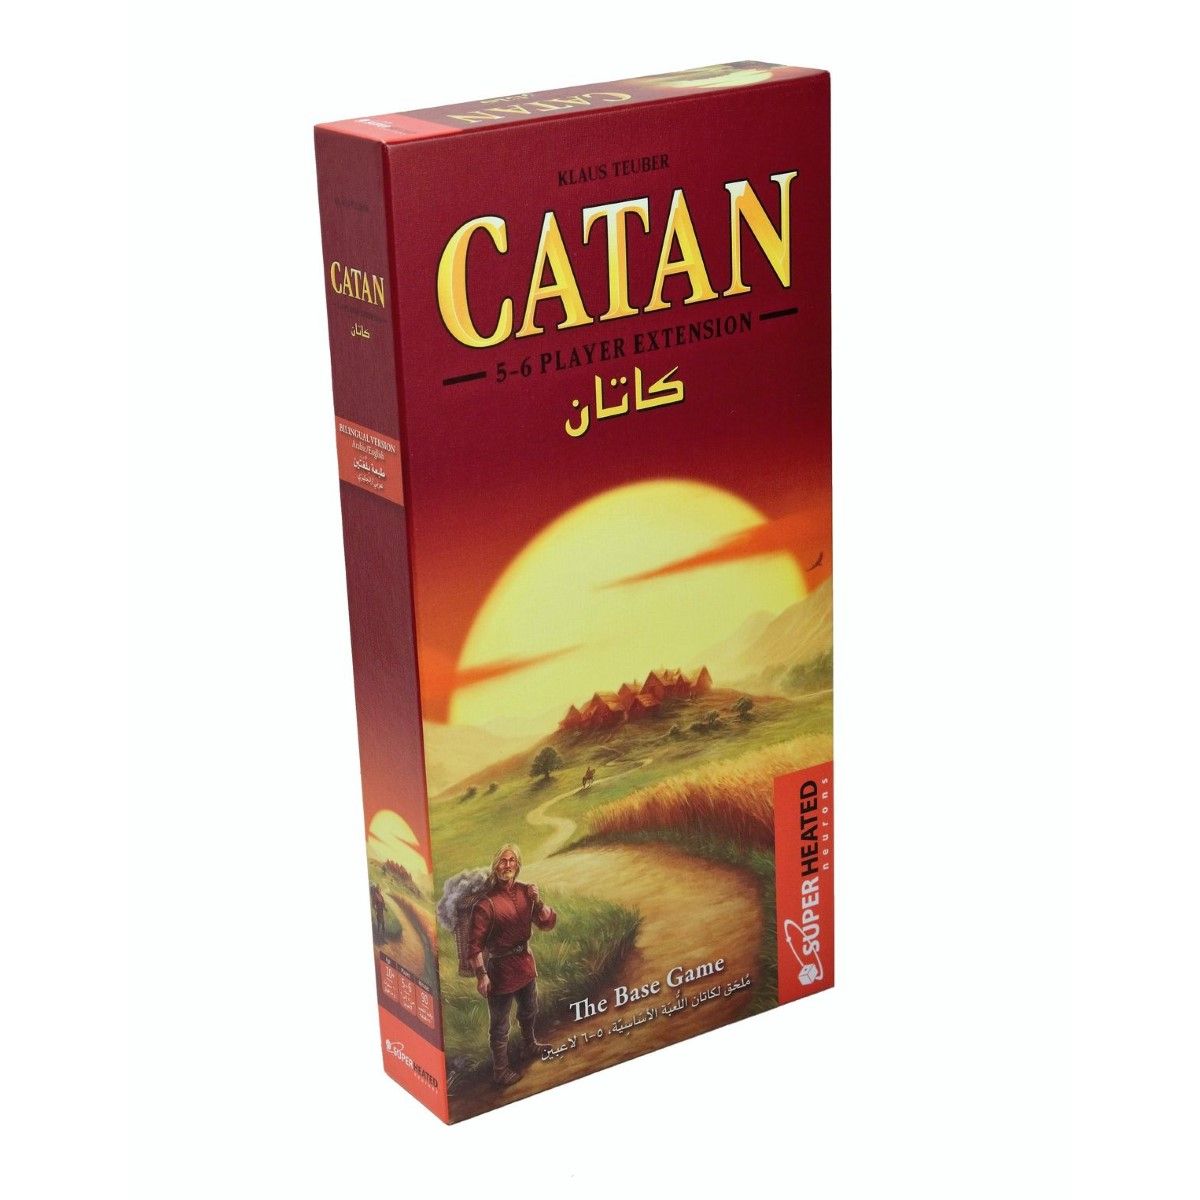 لعبة كاتان بـ 5-6 لاعبين باللغتين العربية والإنجليزية